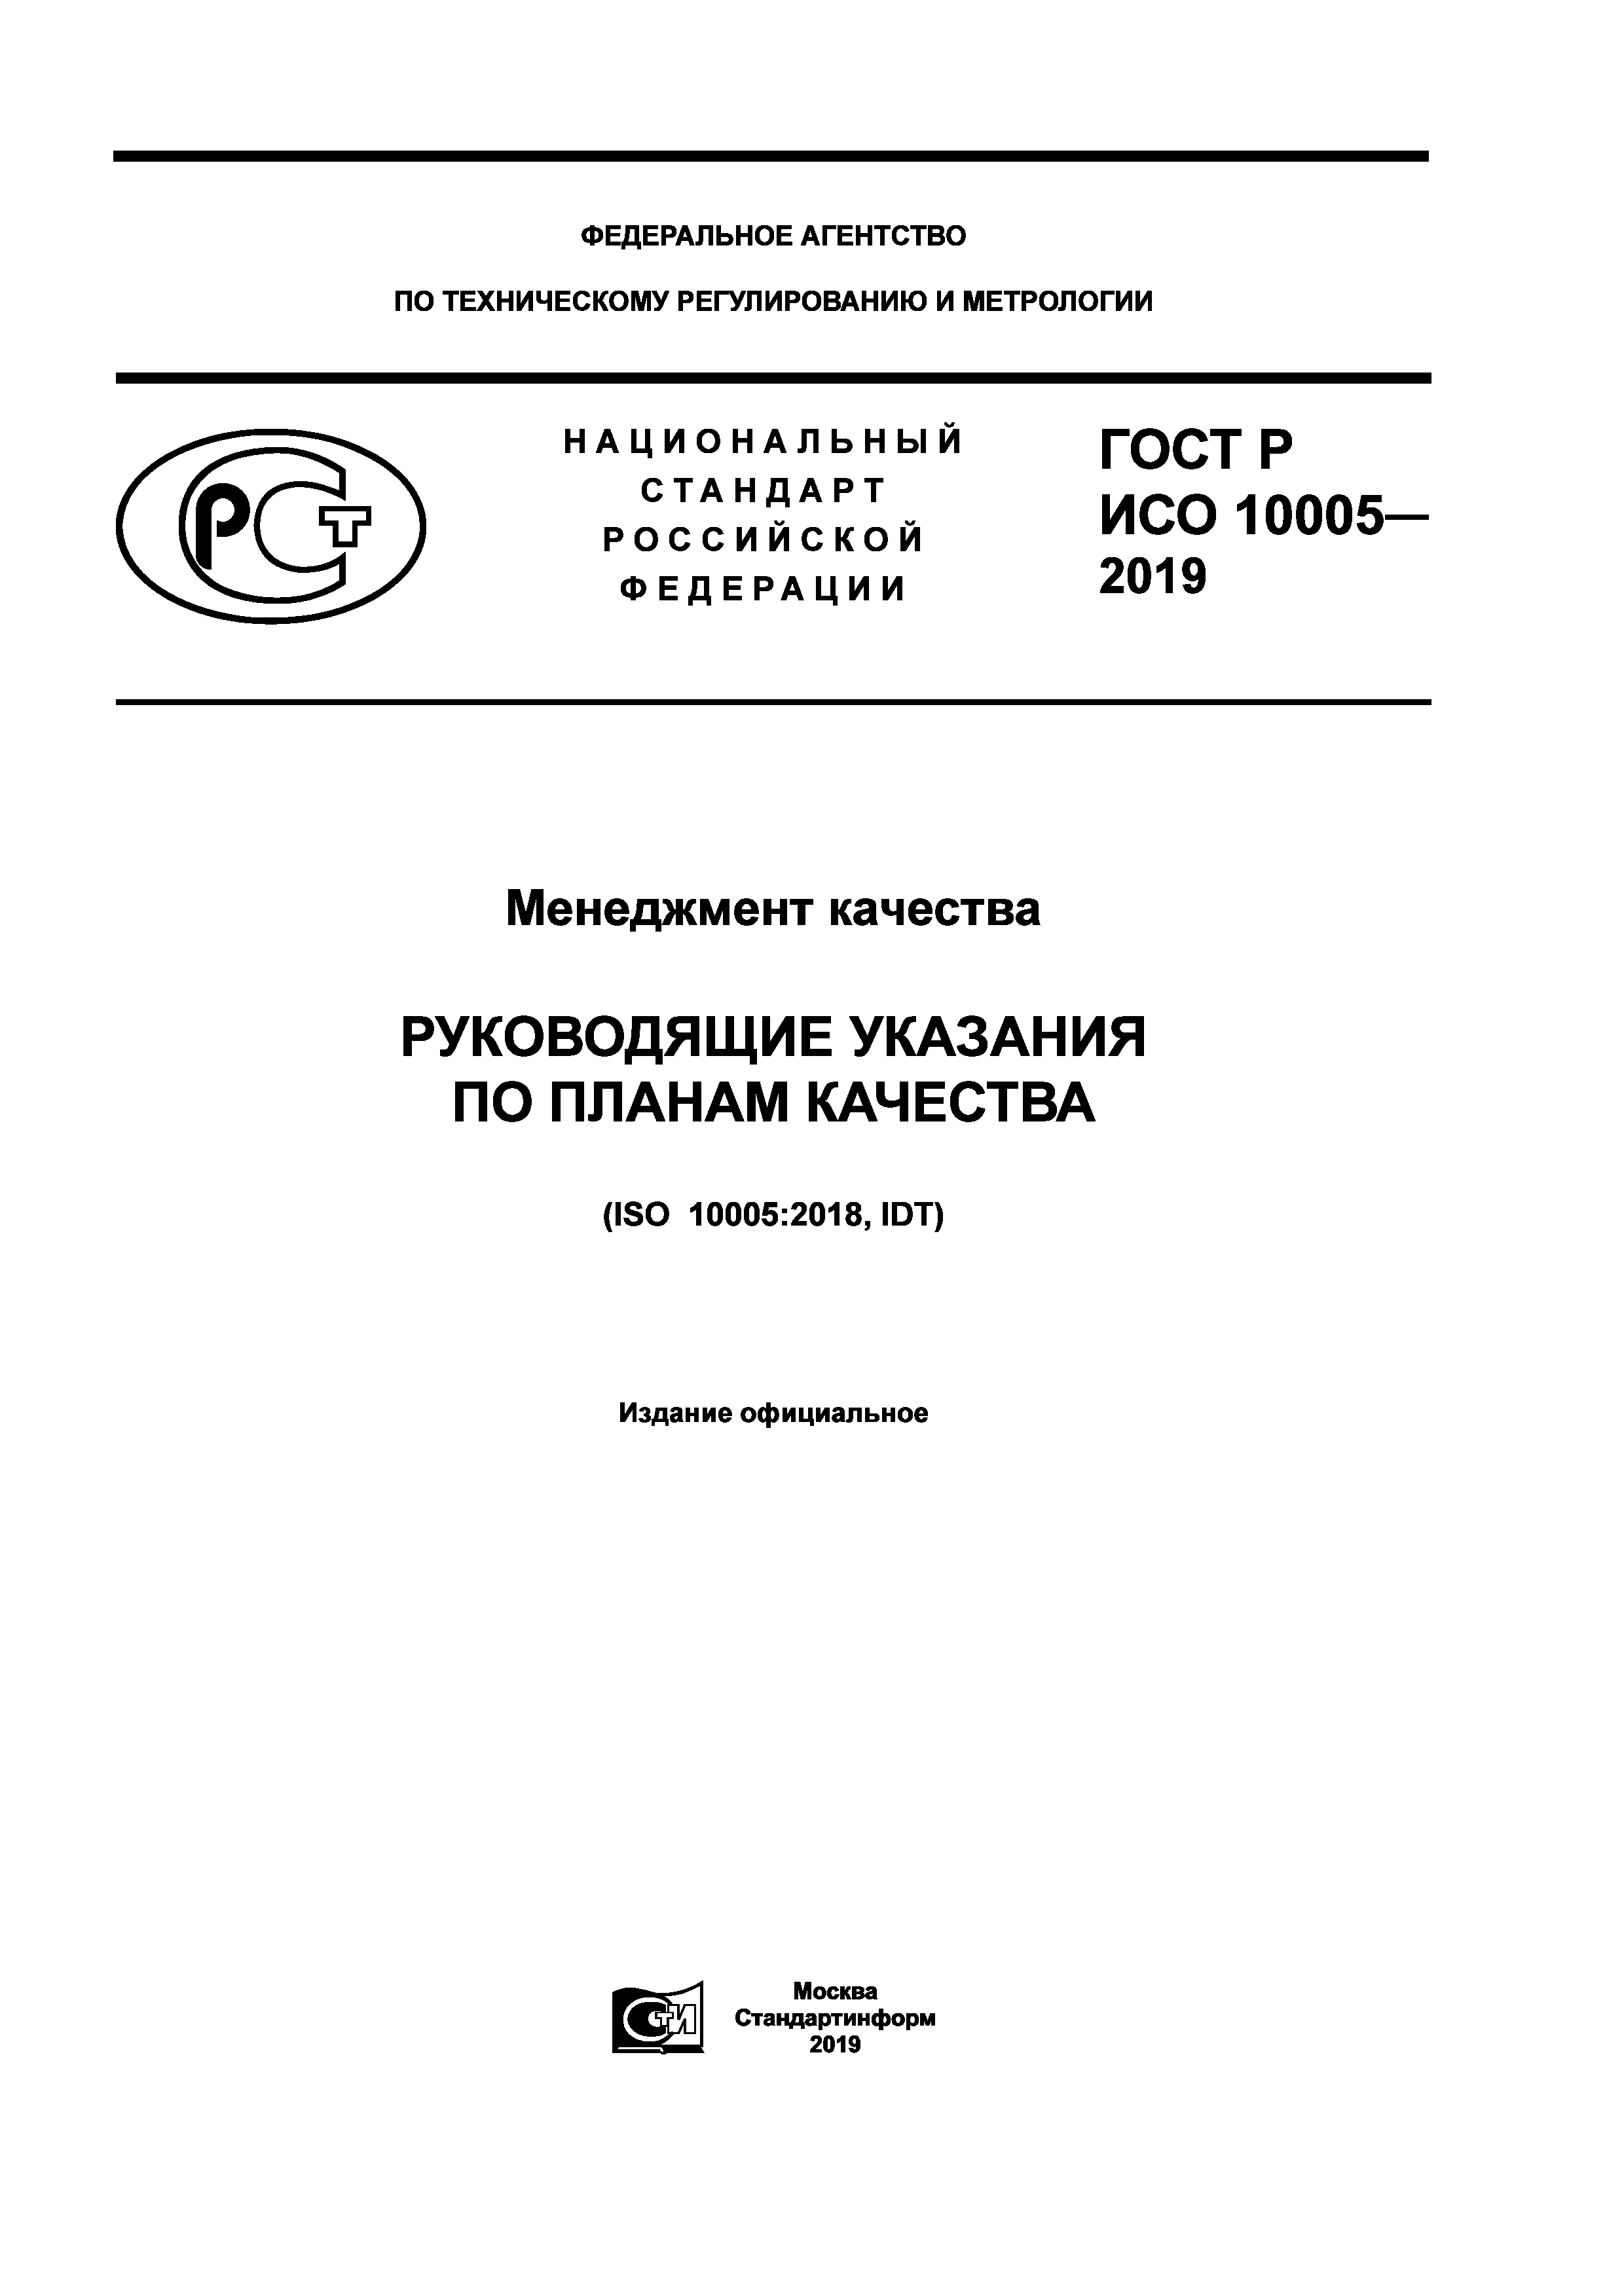 ГОСТ Р ИСО 10005-2019